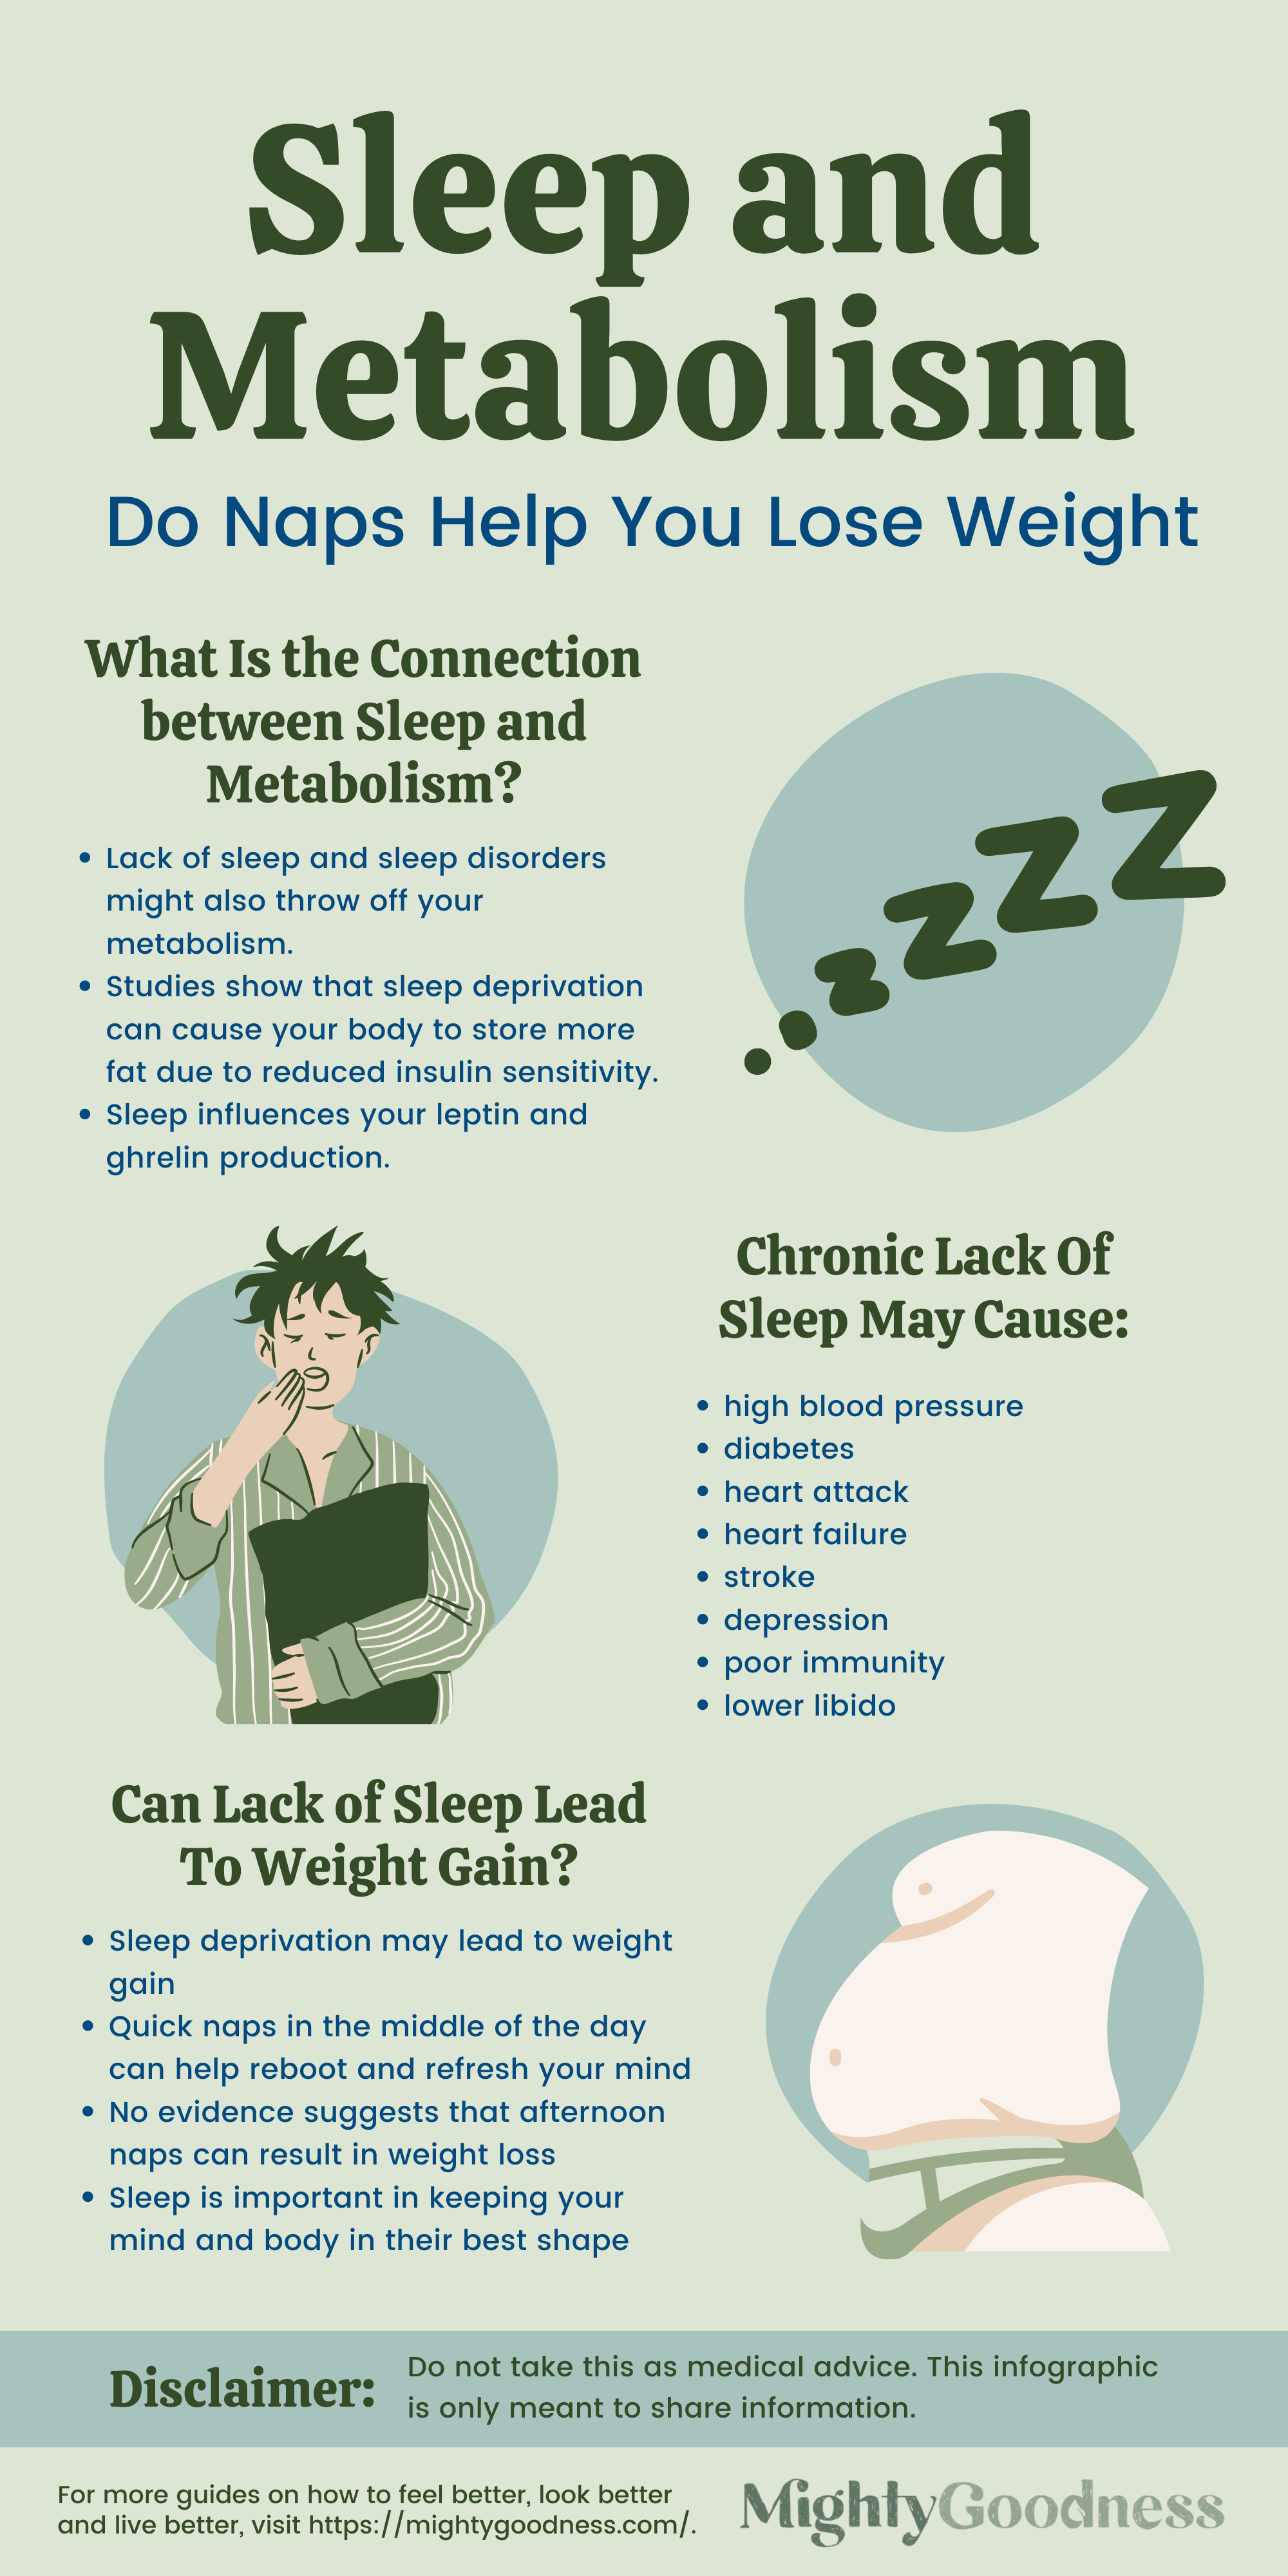 Sleep and Metabolism